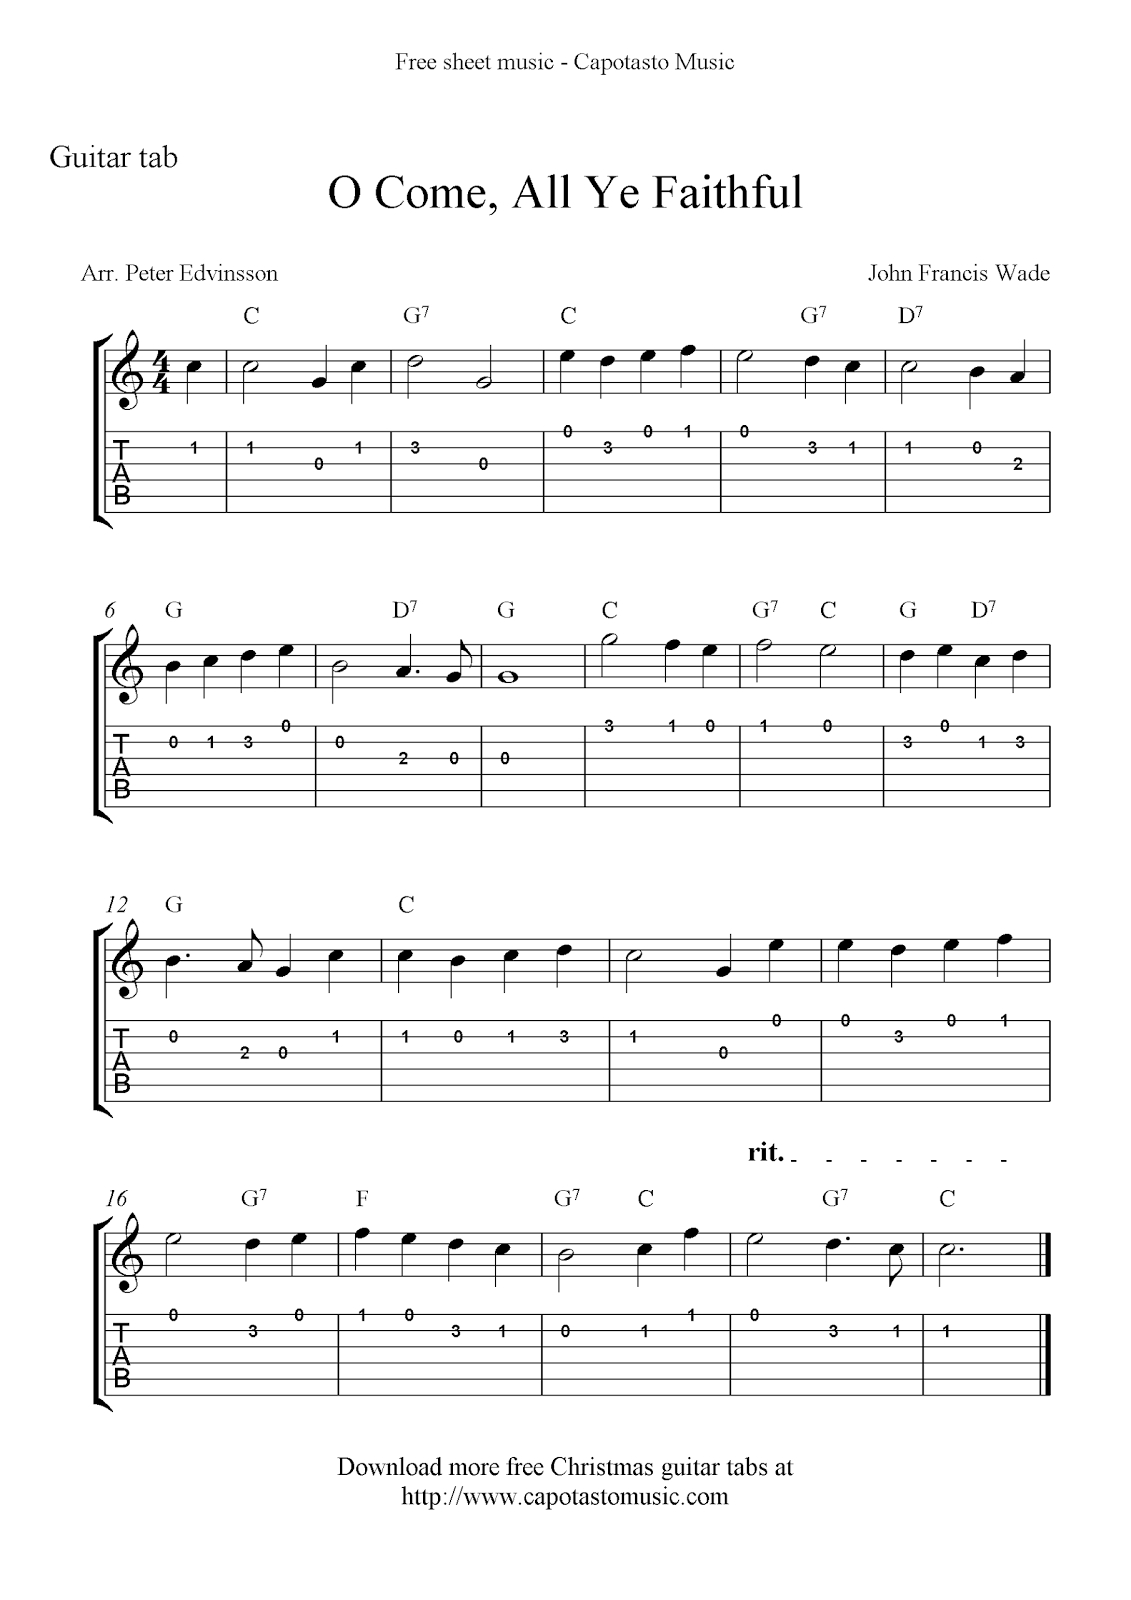 Free Printable Sheet Music: O Come, All Ye Faithful, Easy Free - Free Printable Guitar Music